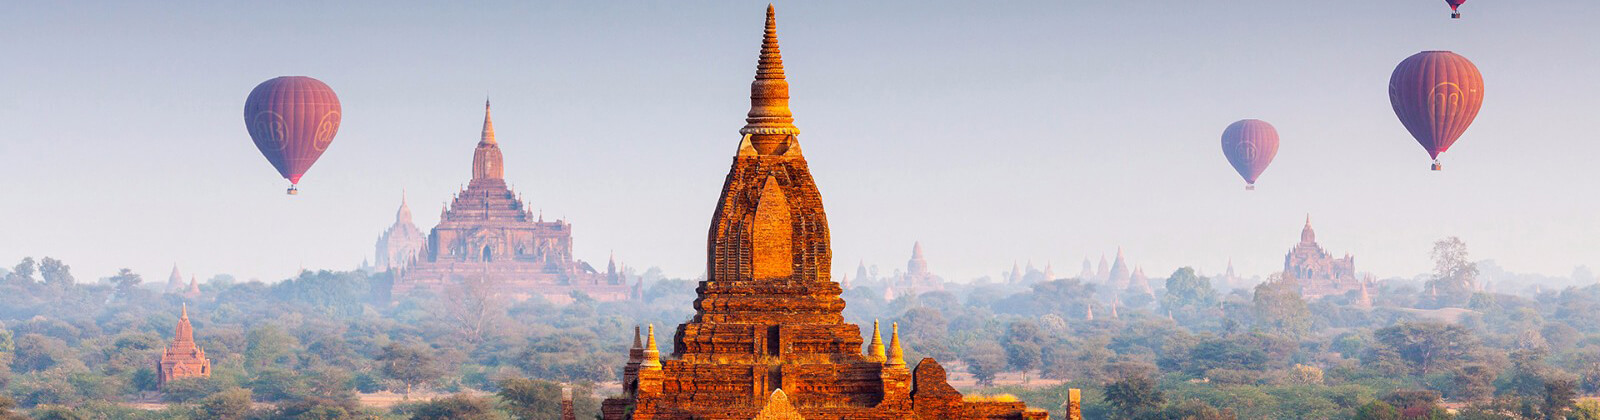 Bagan tours